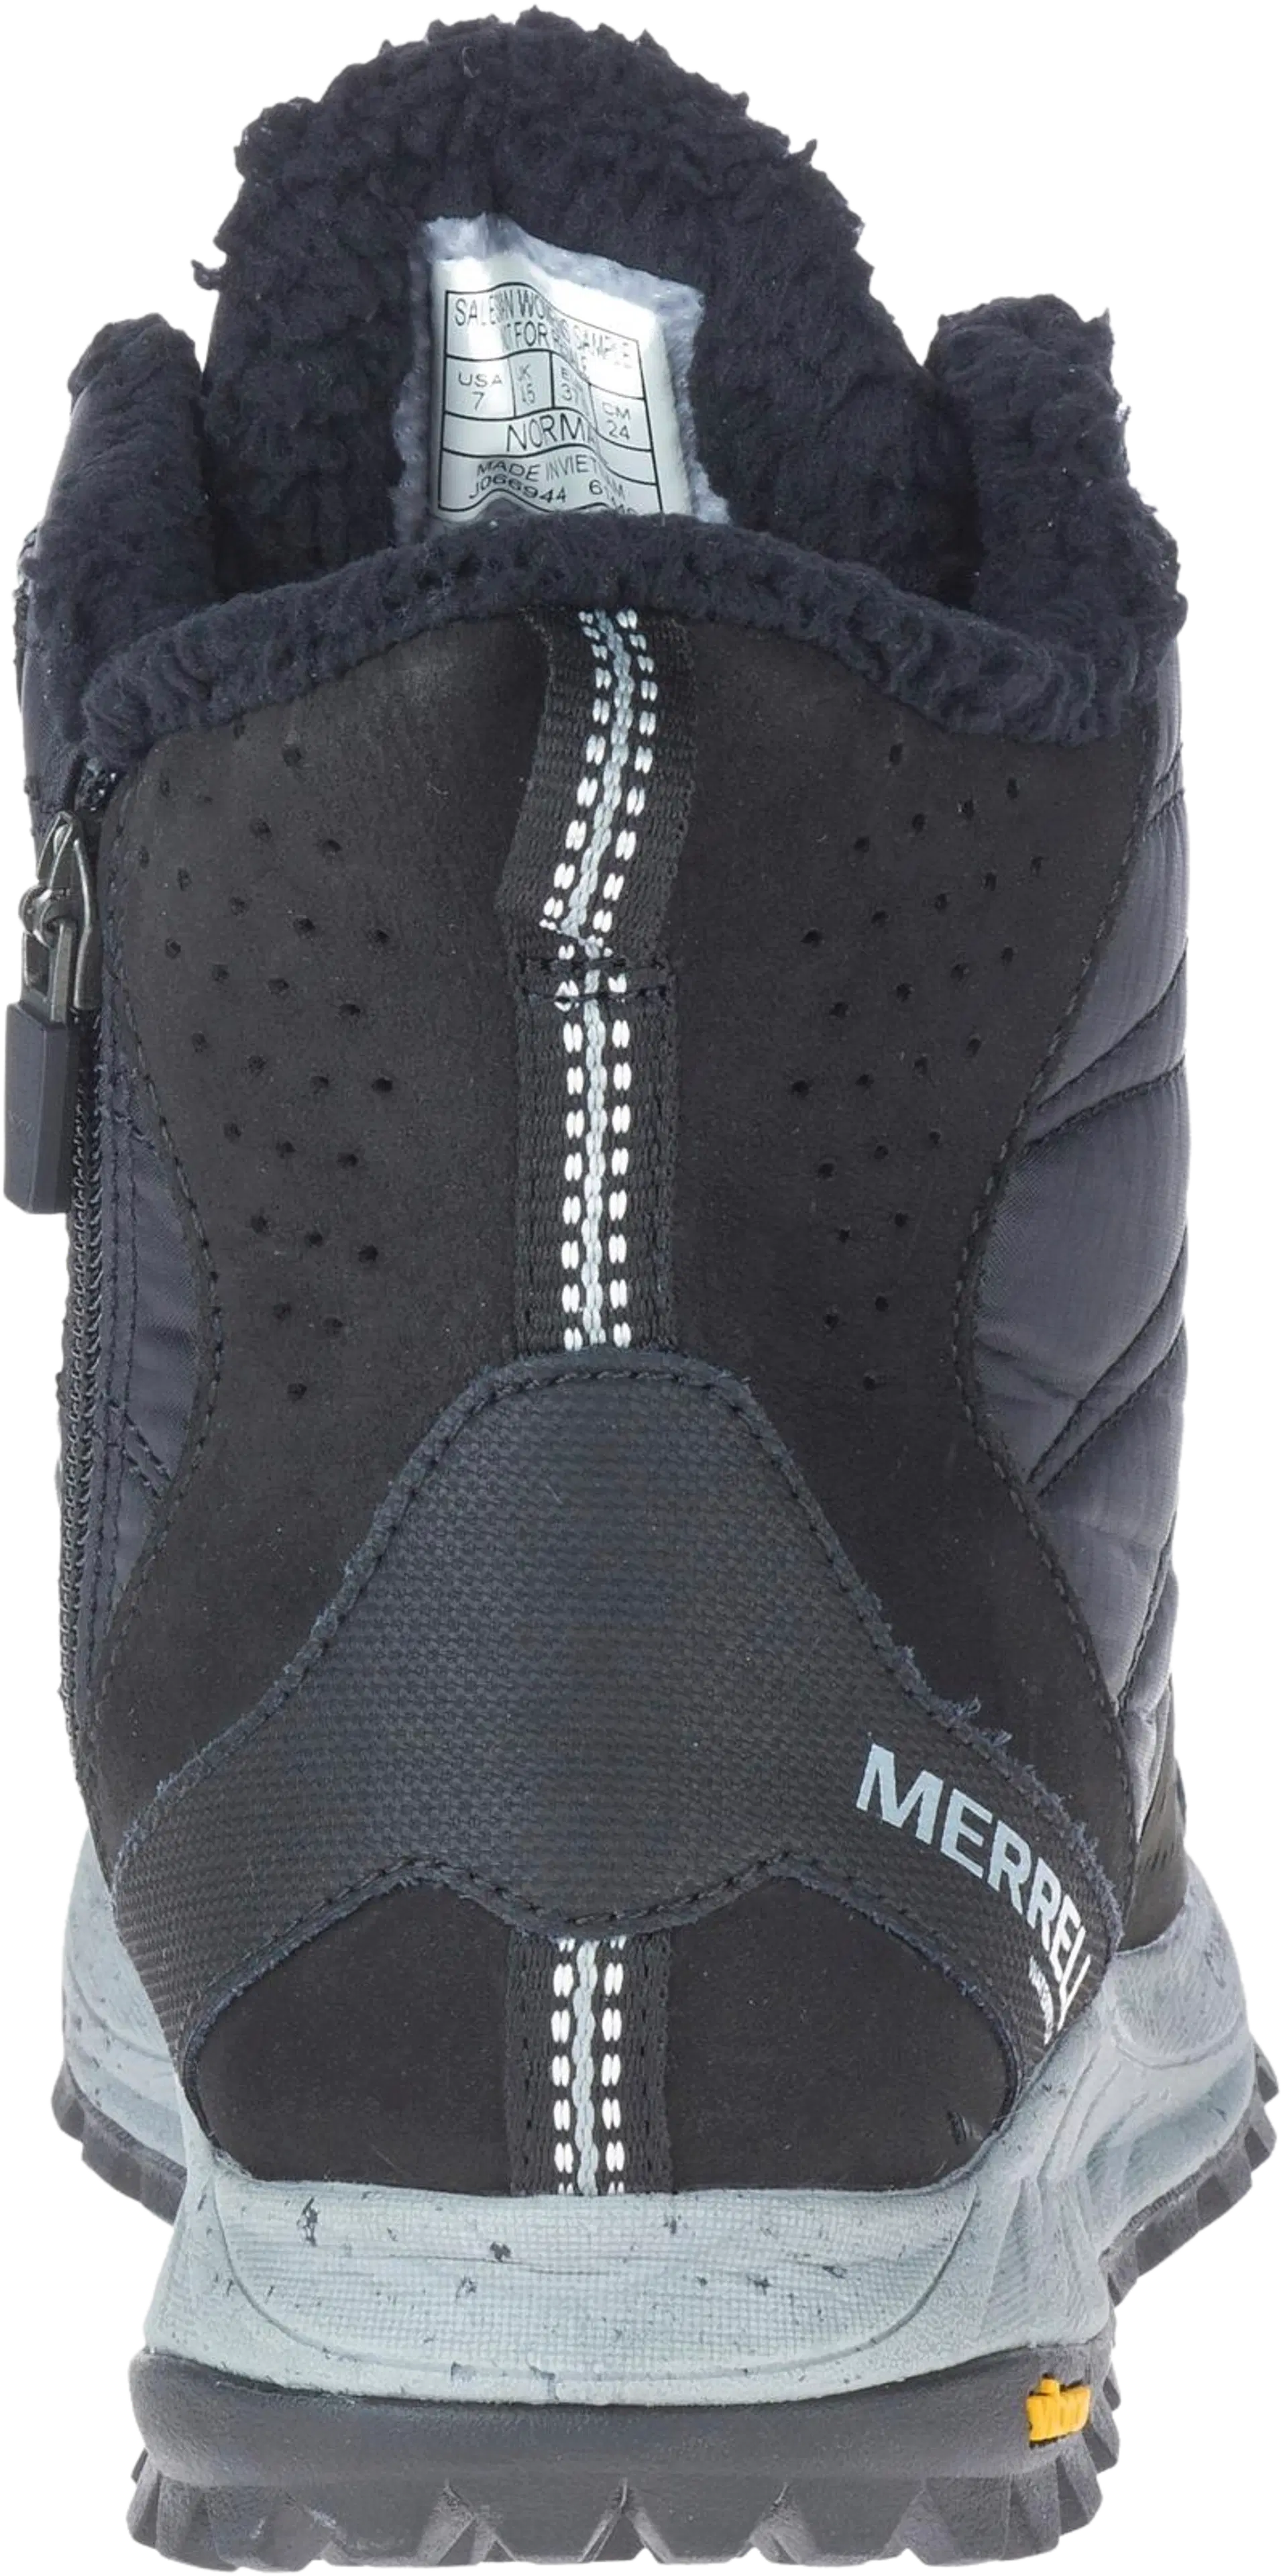 Merrell Antora Sneakers Boot